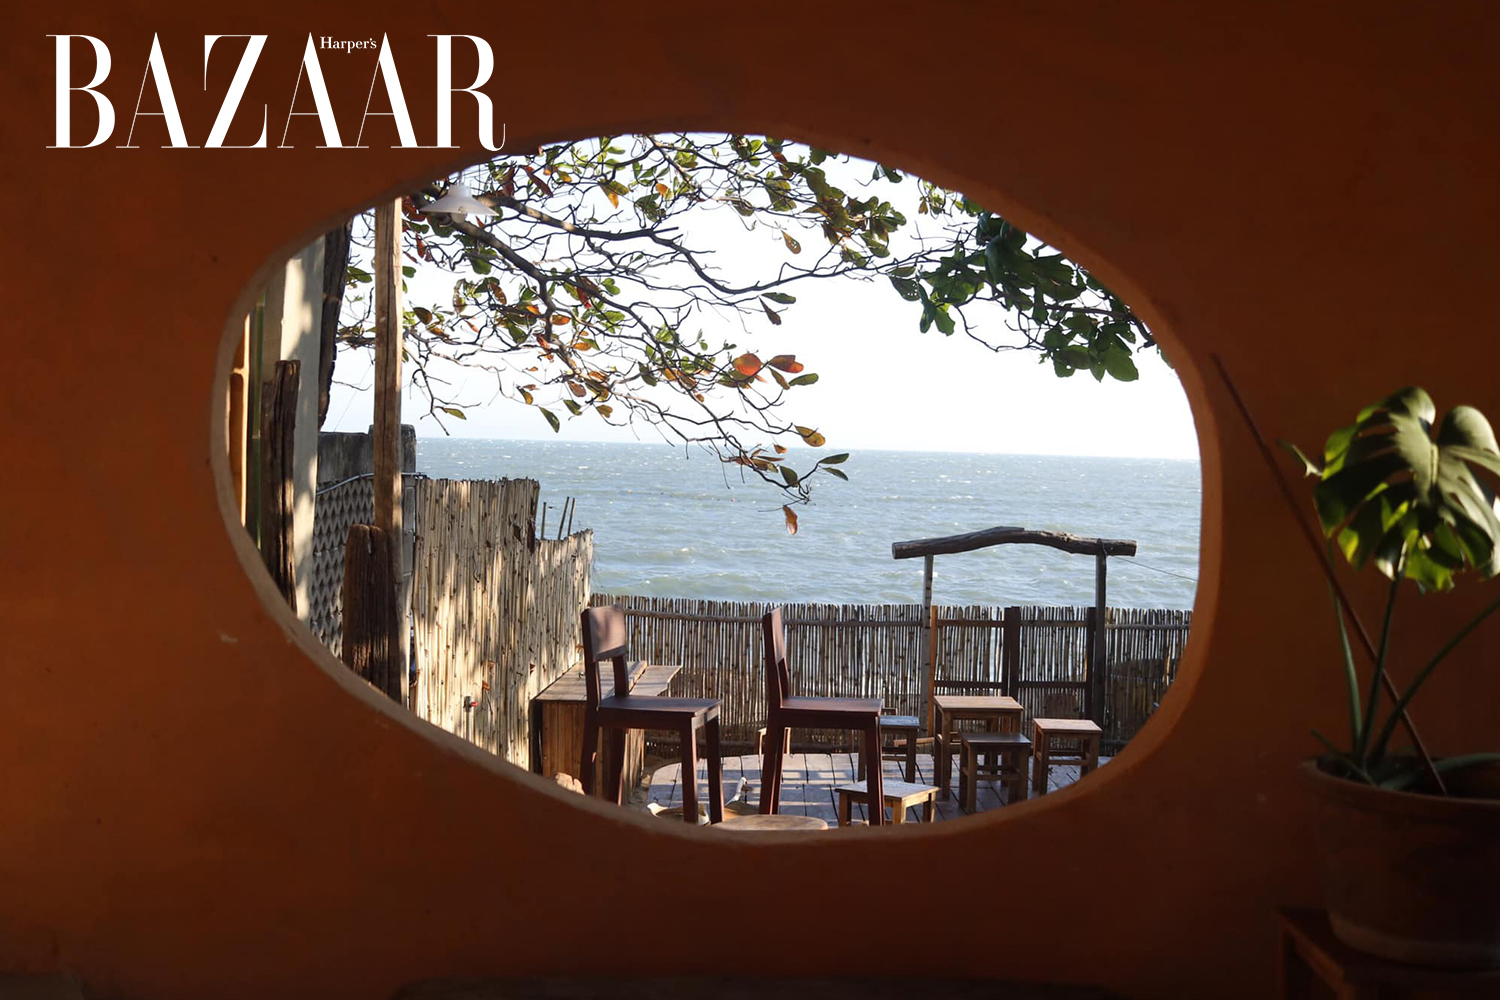 Harper's Bazaar_Check-in 5 quán cà phê đẹp nhất Phan Thiết_02